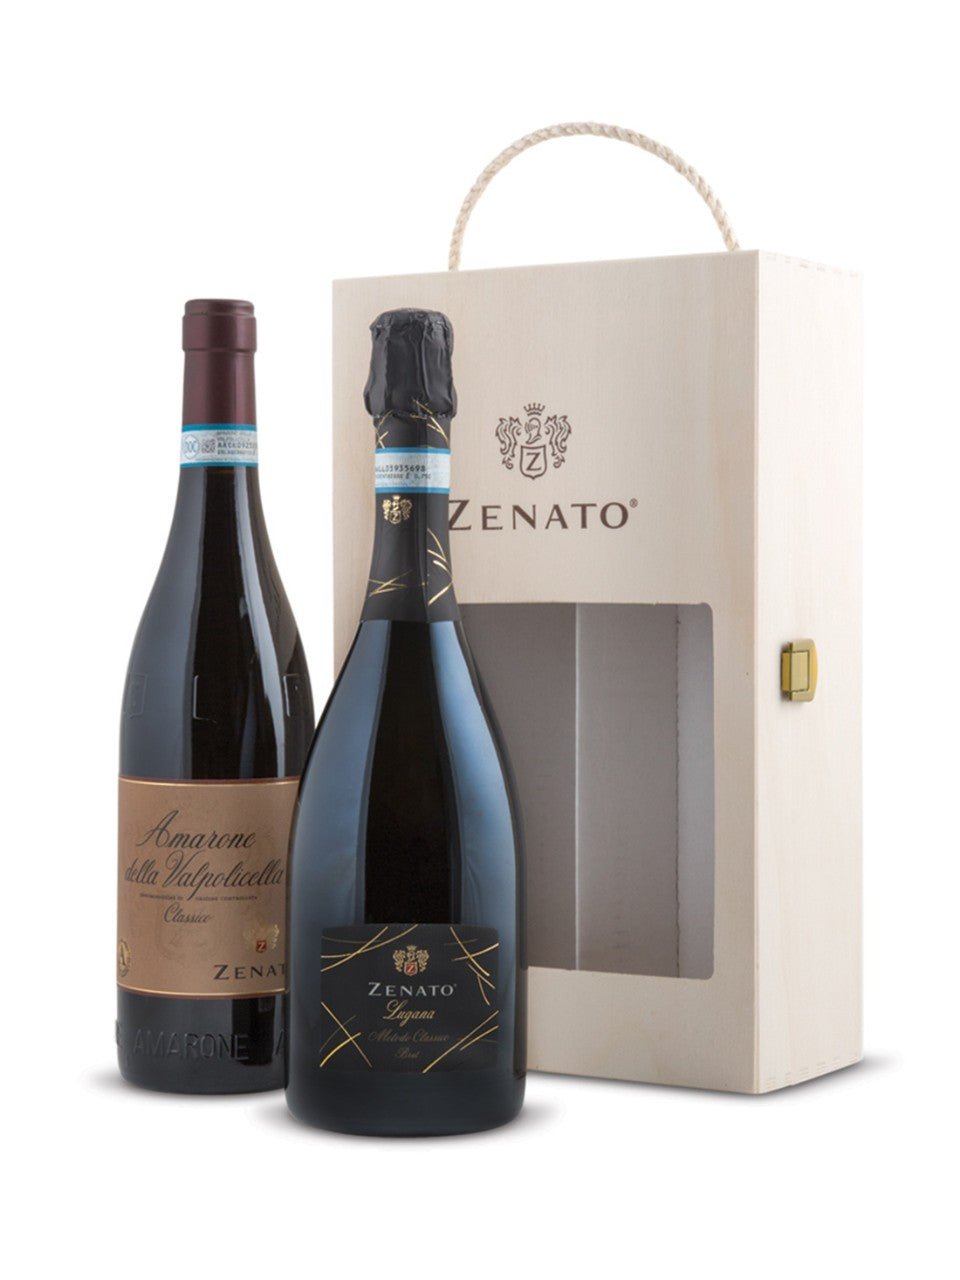 Zenato Amarone della Valpolicella Classico and Lugana Brut 2 x 750 ml bottle VINTAGES